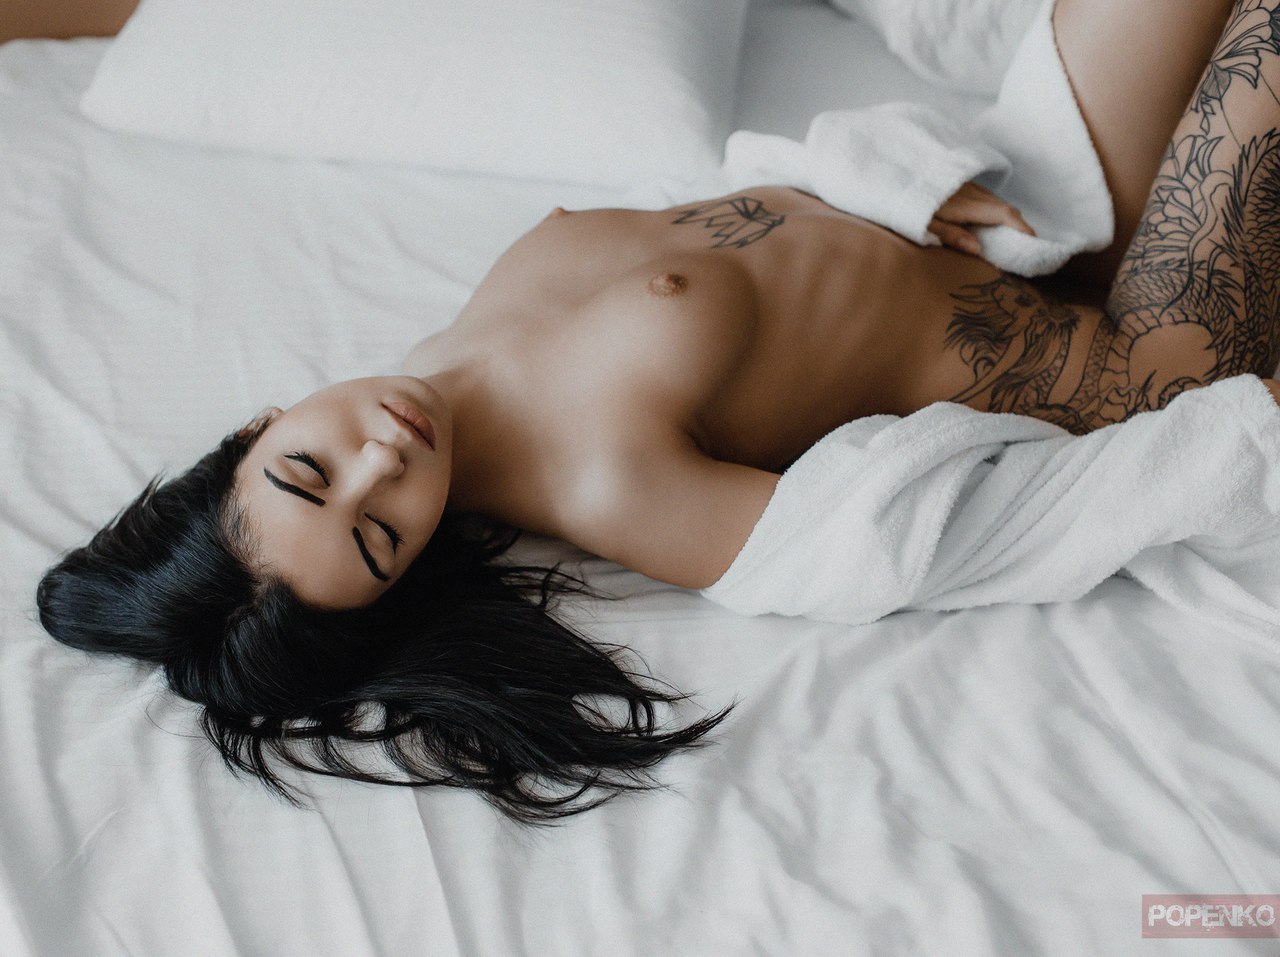 Девушка с татуировкой раздевается на постели 